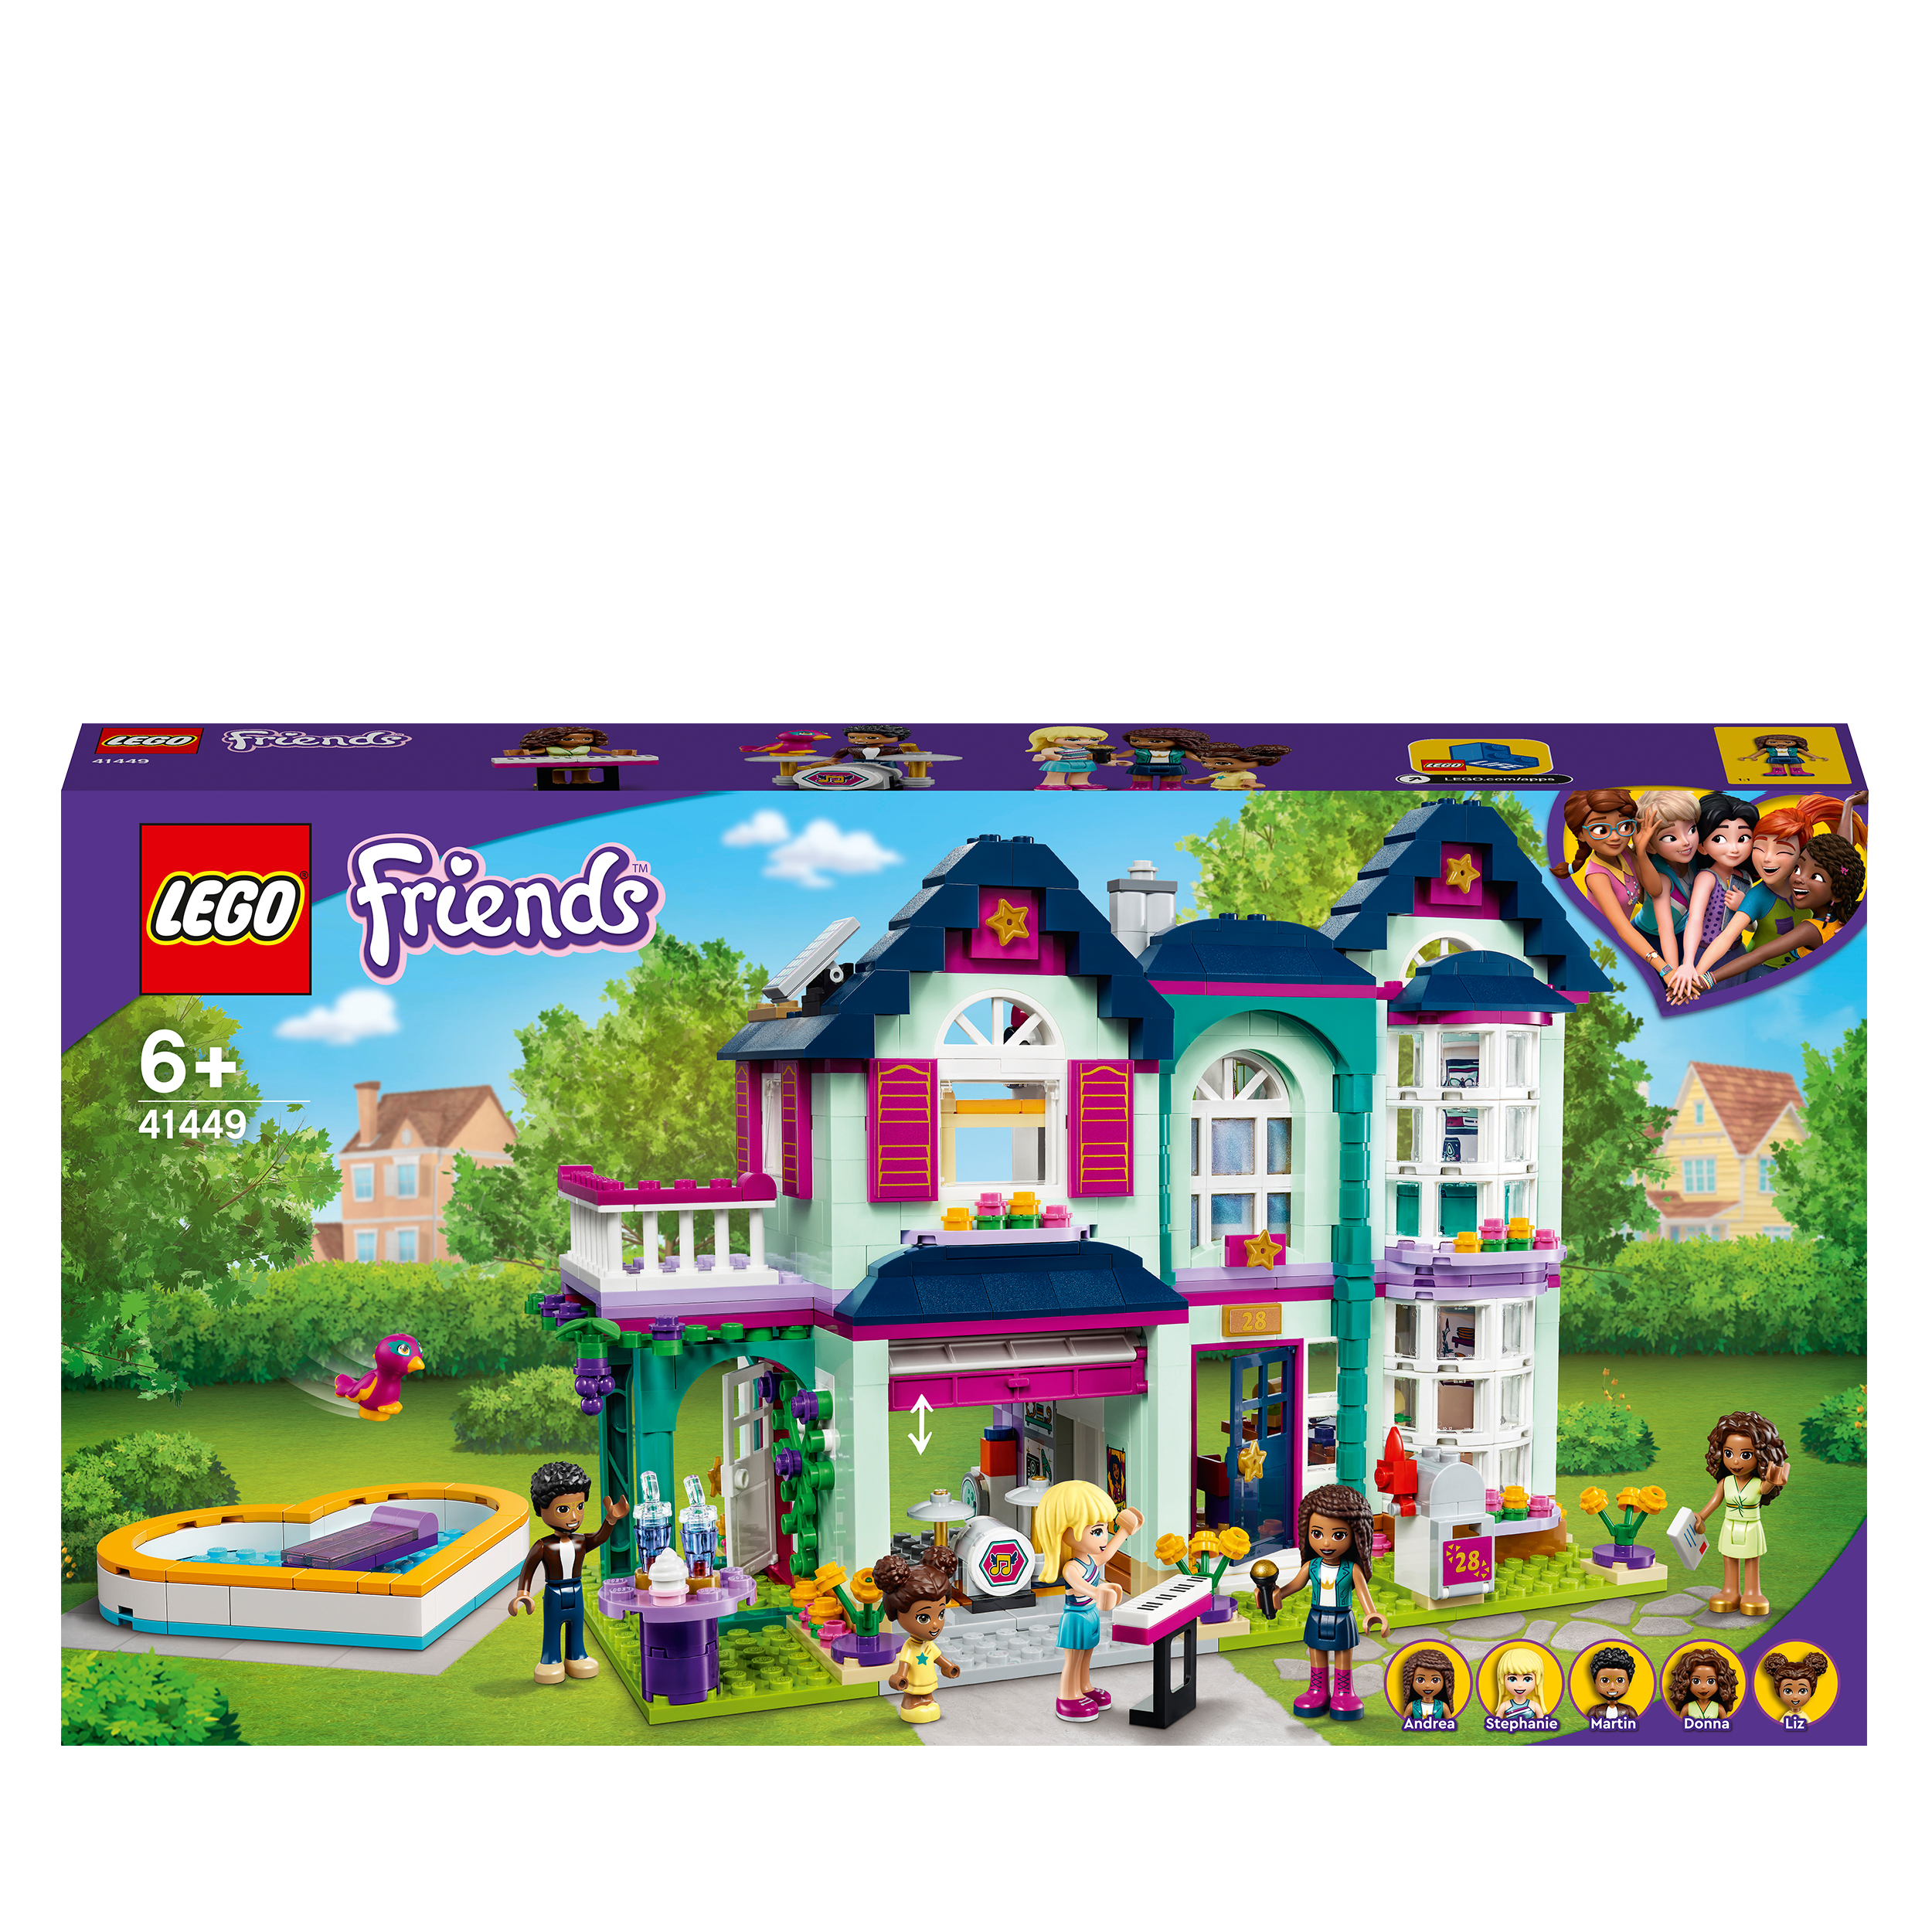 LEGO Friends La villetta familiare di Andrea [41449]